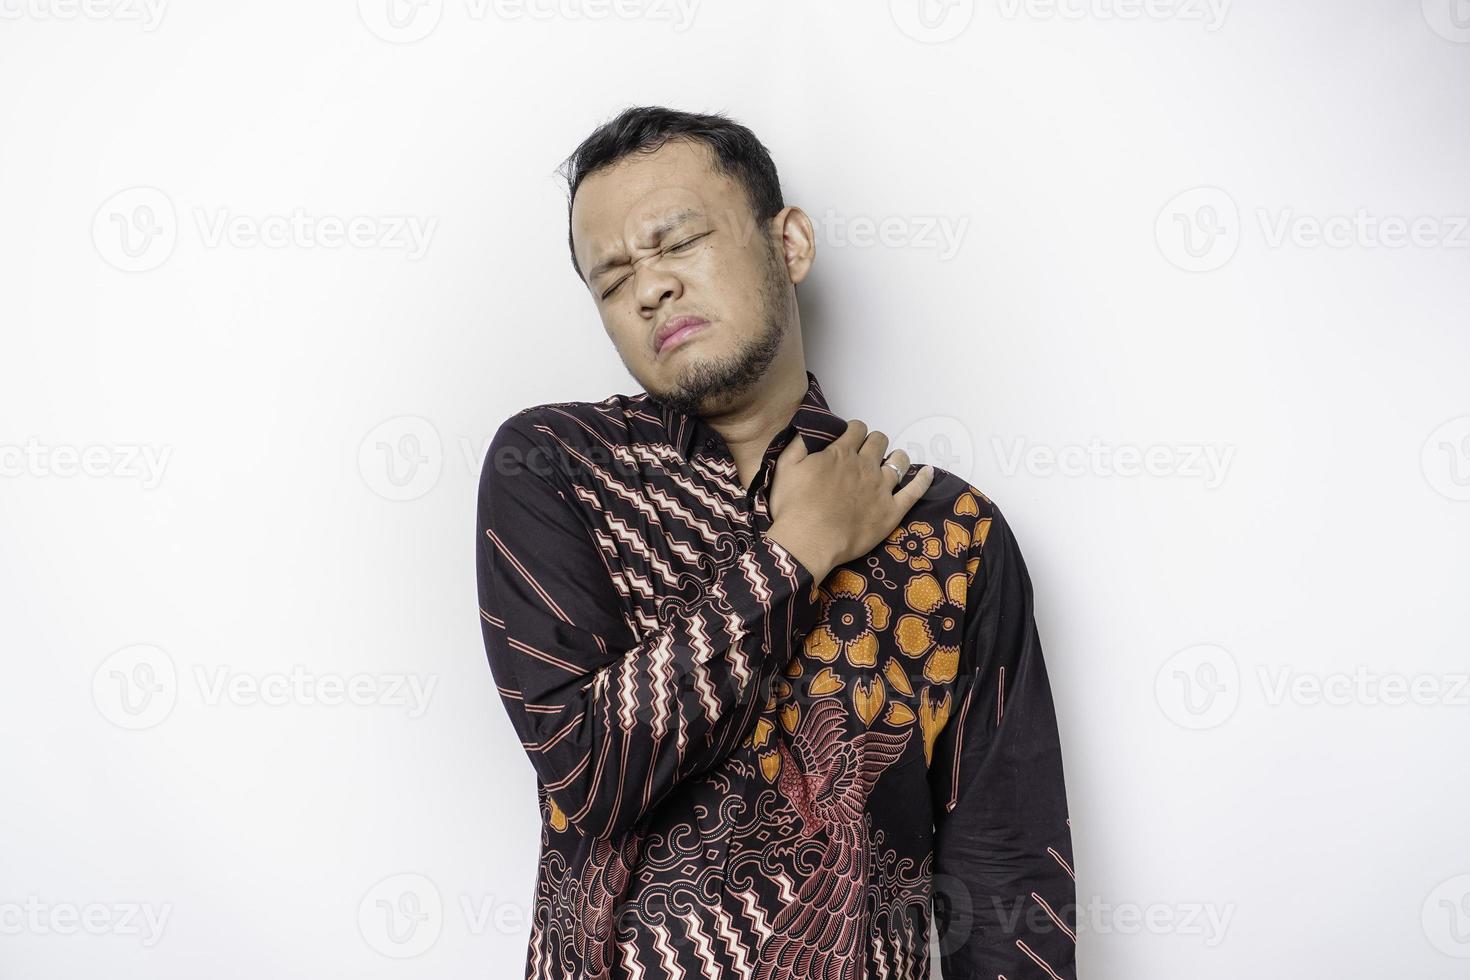 jovem chateado cansado usa camisa batik sofrendo de dor, espasmo muscular no local de trabalho. cansaço, prazo, dor e postura incorreta foto